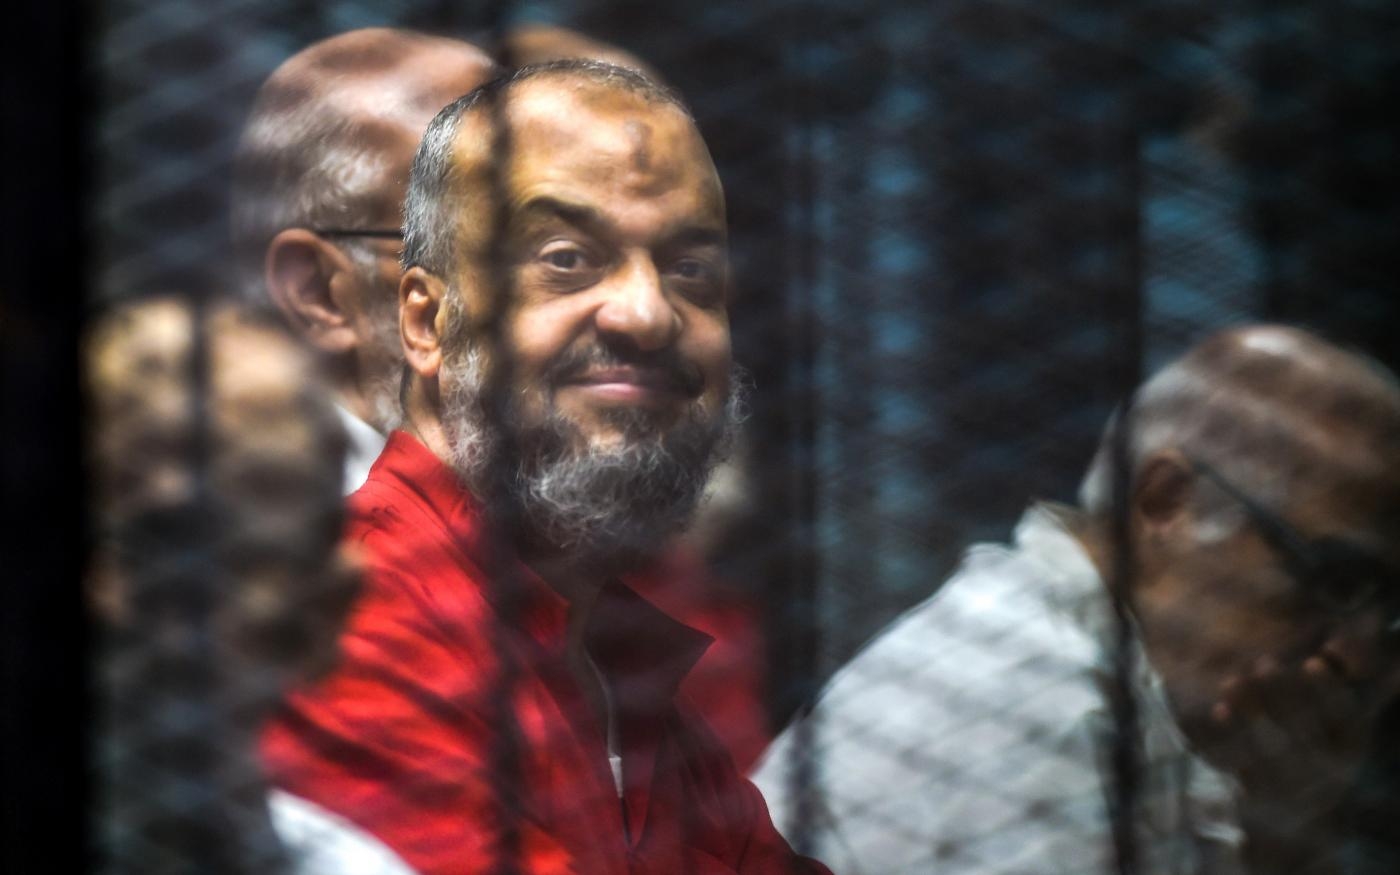 Mohamed el-Beltagy, ex-secrétaire général des Frères musulmans, élu au Parlement en 2005 et 2012, médecin et ancien maître de conférences à la faculté de médecine de l’Université du Caire, est détenu à l’isolement à la prison de haute sécurité depuis 2013 (AFP)